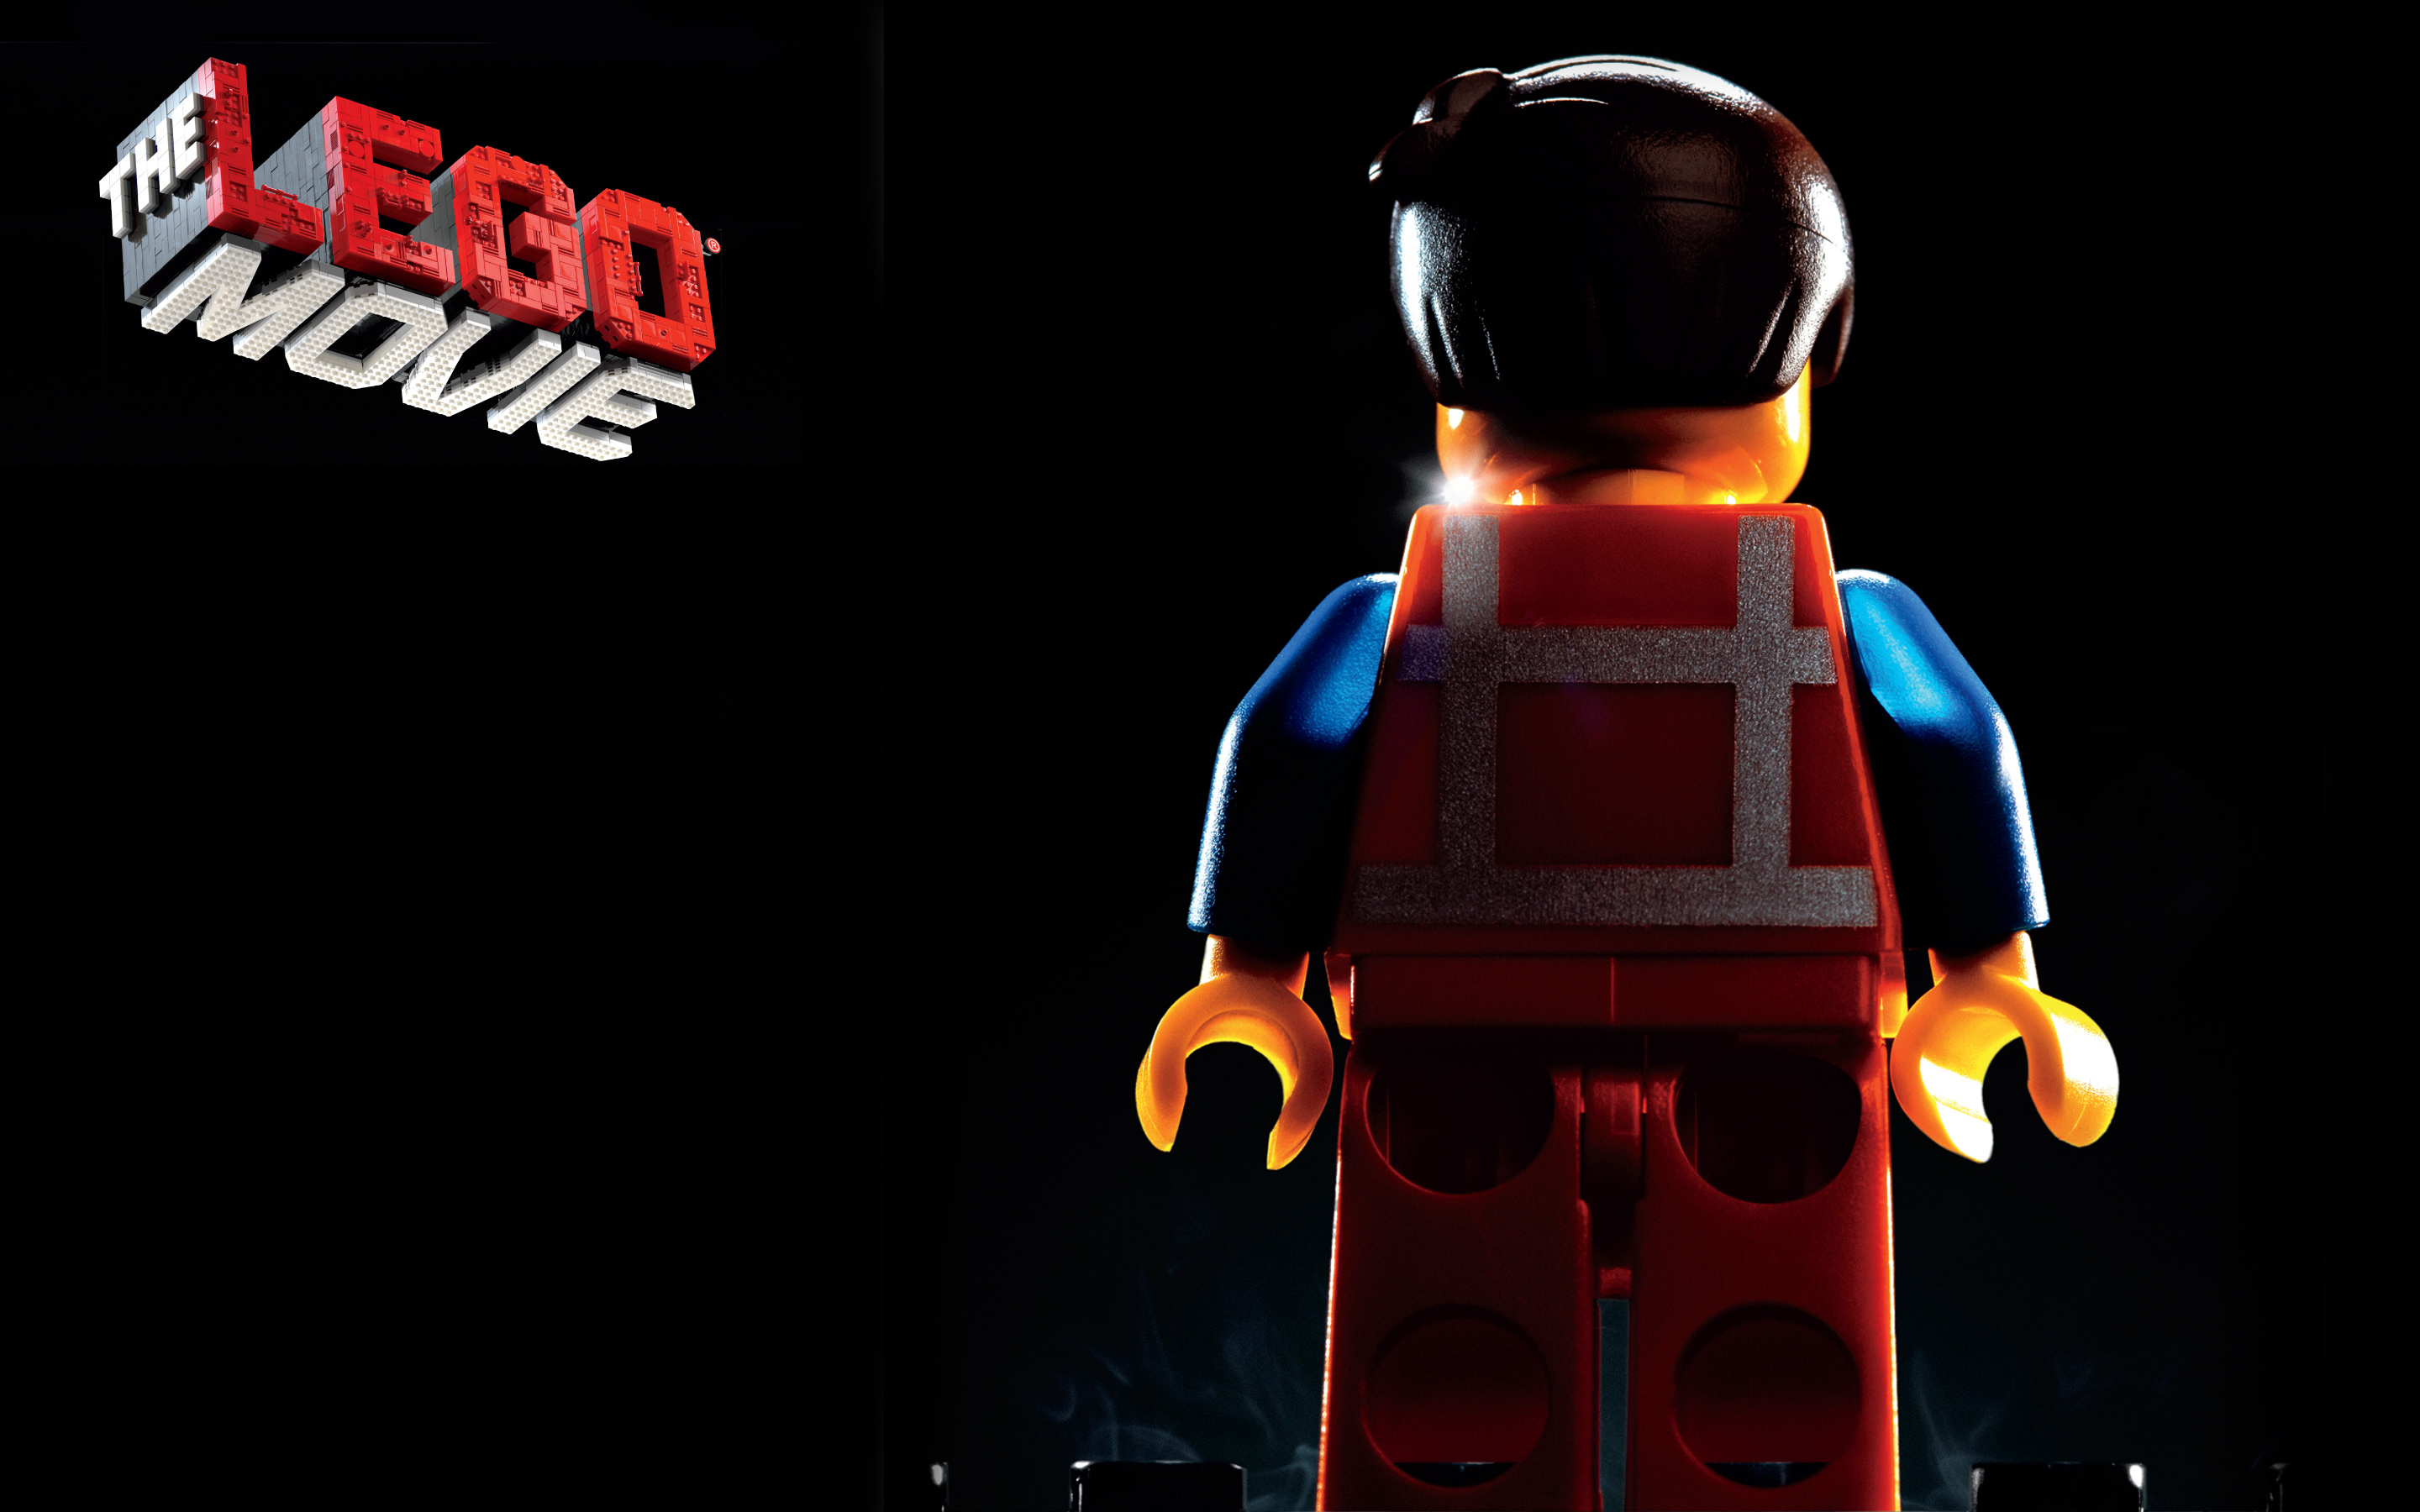 Emmet The Lego Movie Lego Movie Logo Wallpaper Resolution x1800 Id Wallha Com